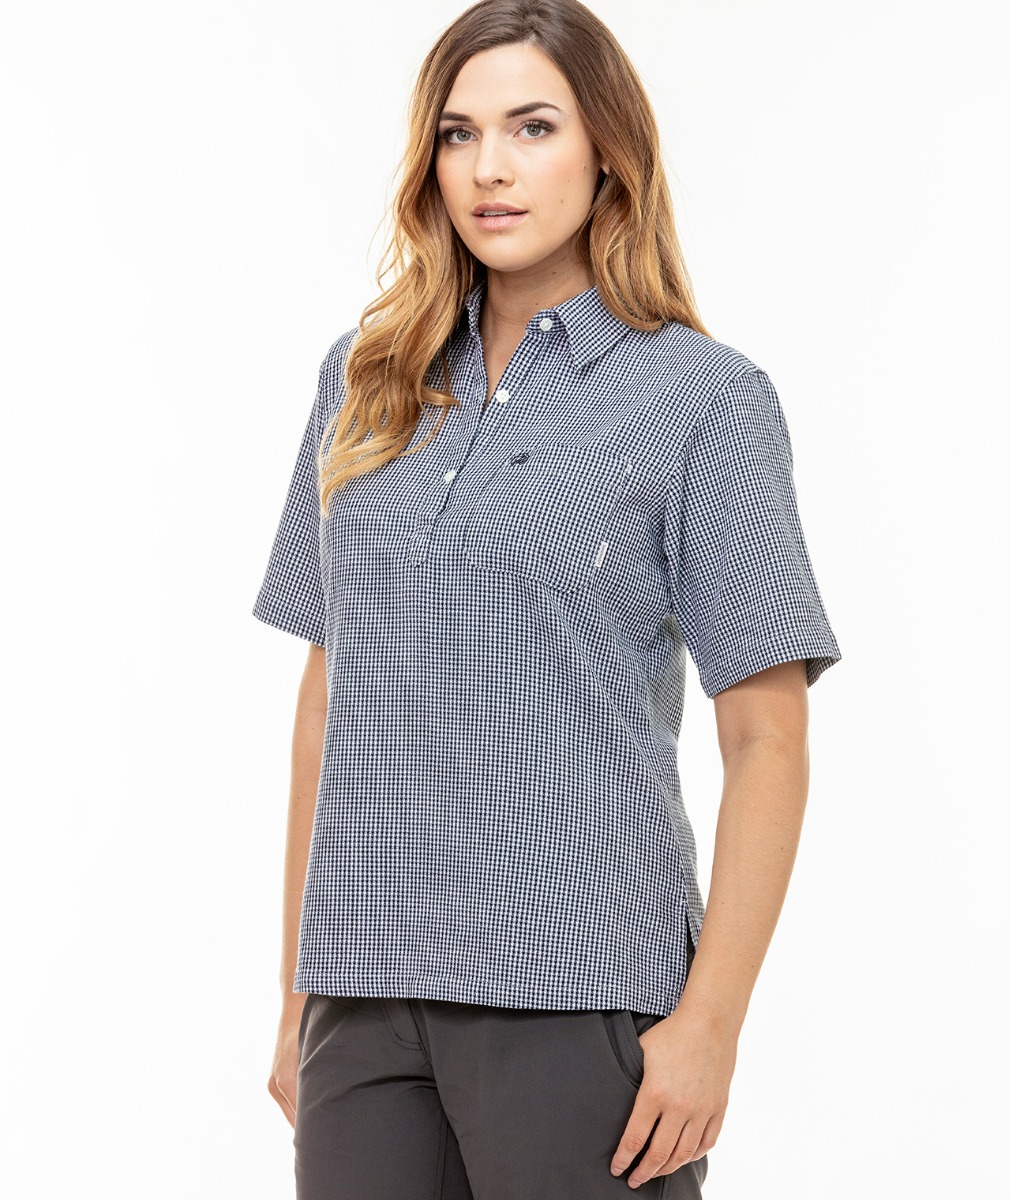 Women's Tasman Short Sleeve Shirt